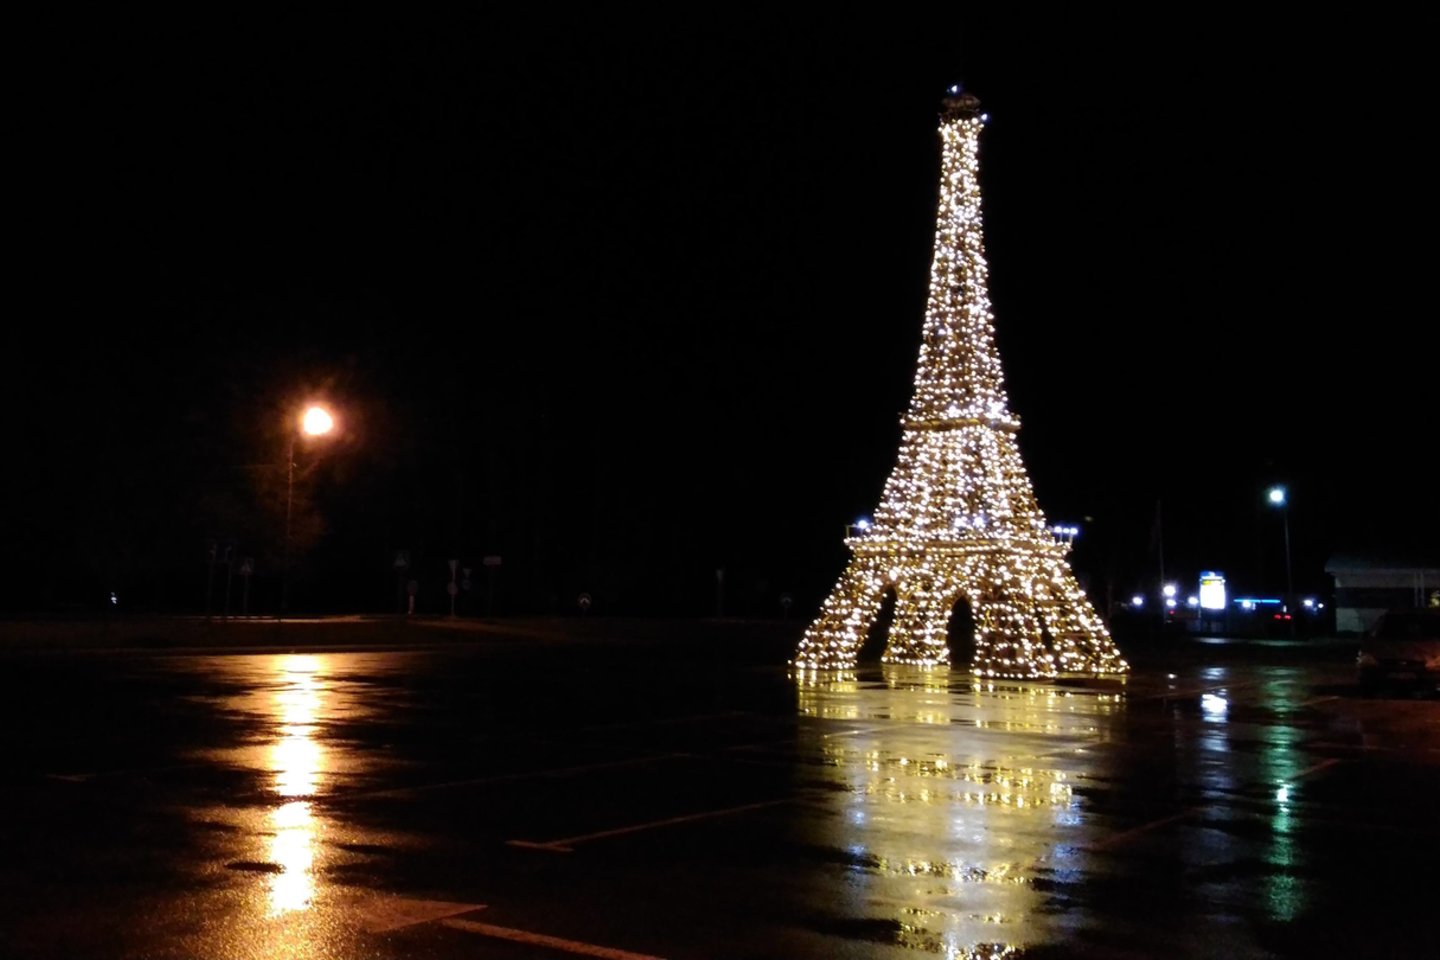  Mažeikiai pasipuošė prancūziškai – prekybos centro aikštelėje sužibo Eifelio bokštas.<br> Skaitytojo nuotr.